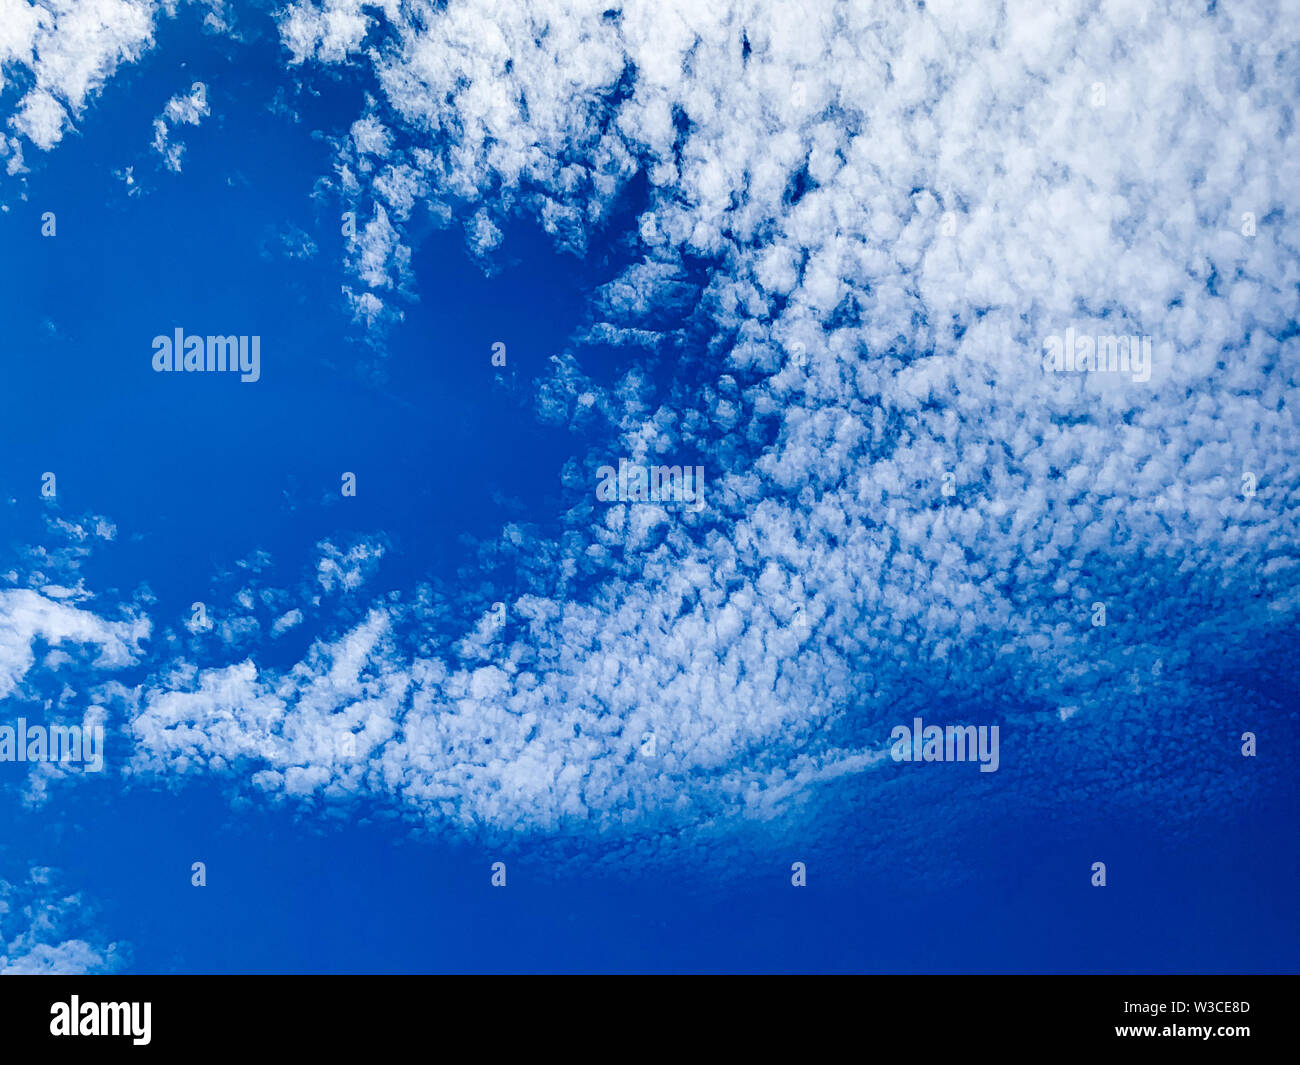 Cirrocumulus nuages sont petites bouffées qui apparaissent généralement en longues rangées haut dans le ciel. Les Cirrocumulus sont normalement blanches Banque D'Images